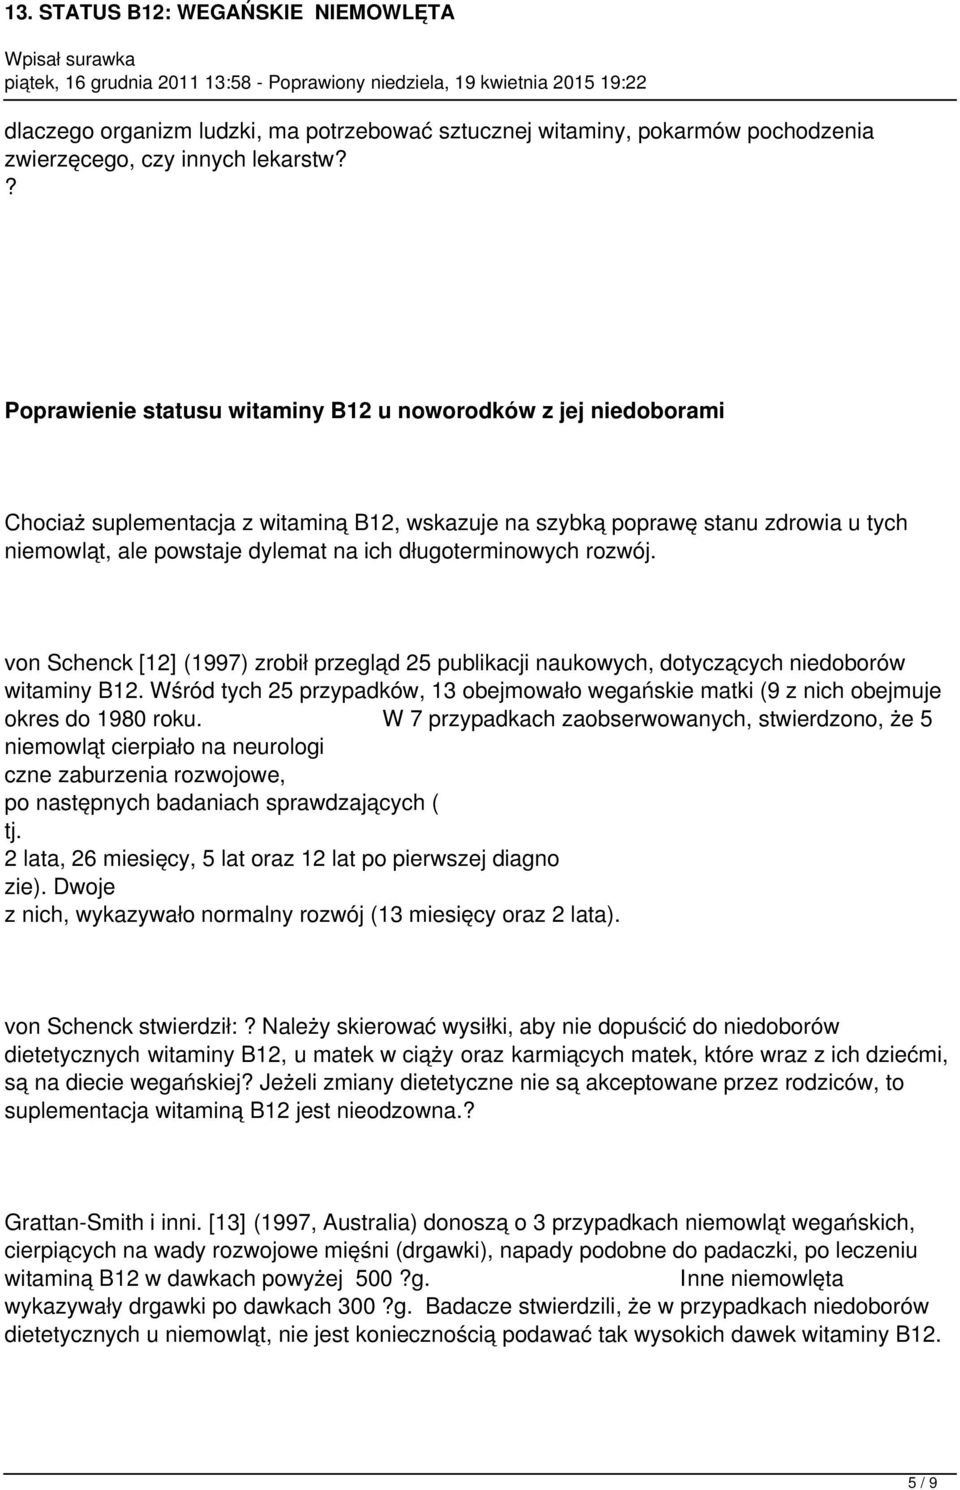 długoterminowych rozwój. von Schenck [12] (1997) zrobił przegląd 25 publikacji naukowych, dotyczących niedoborów witaminy B12.